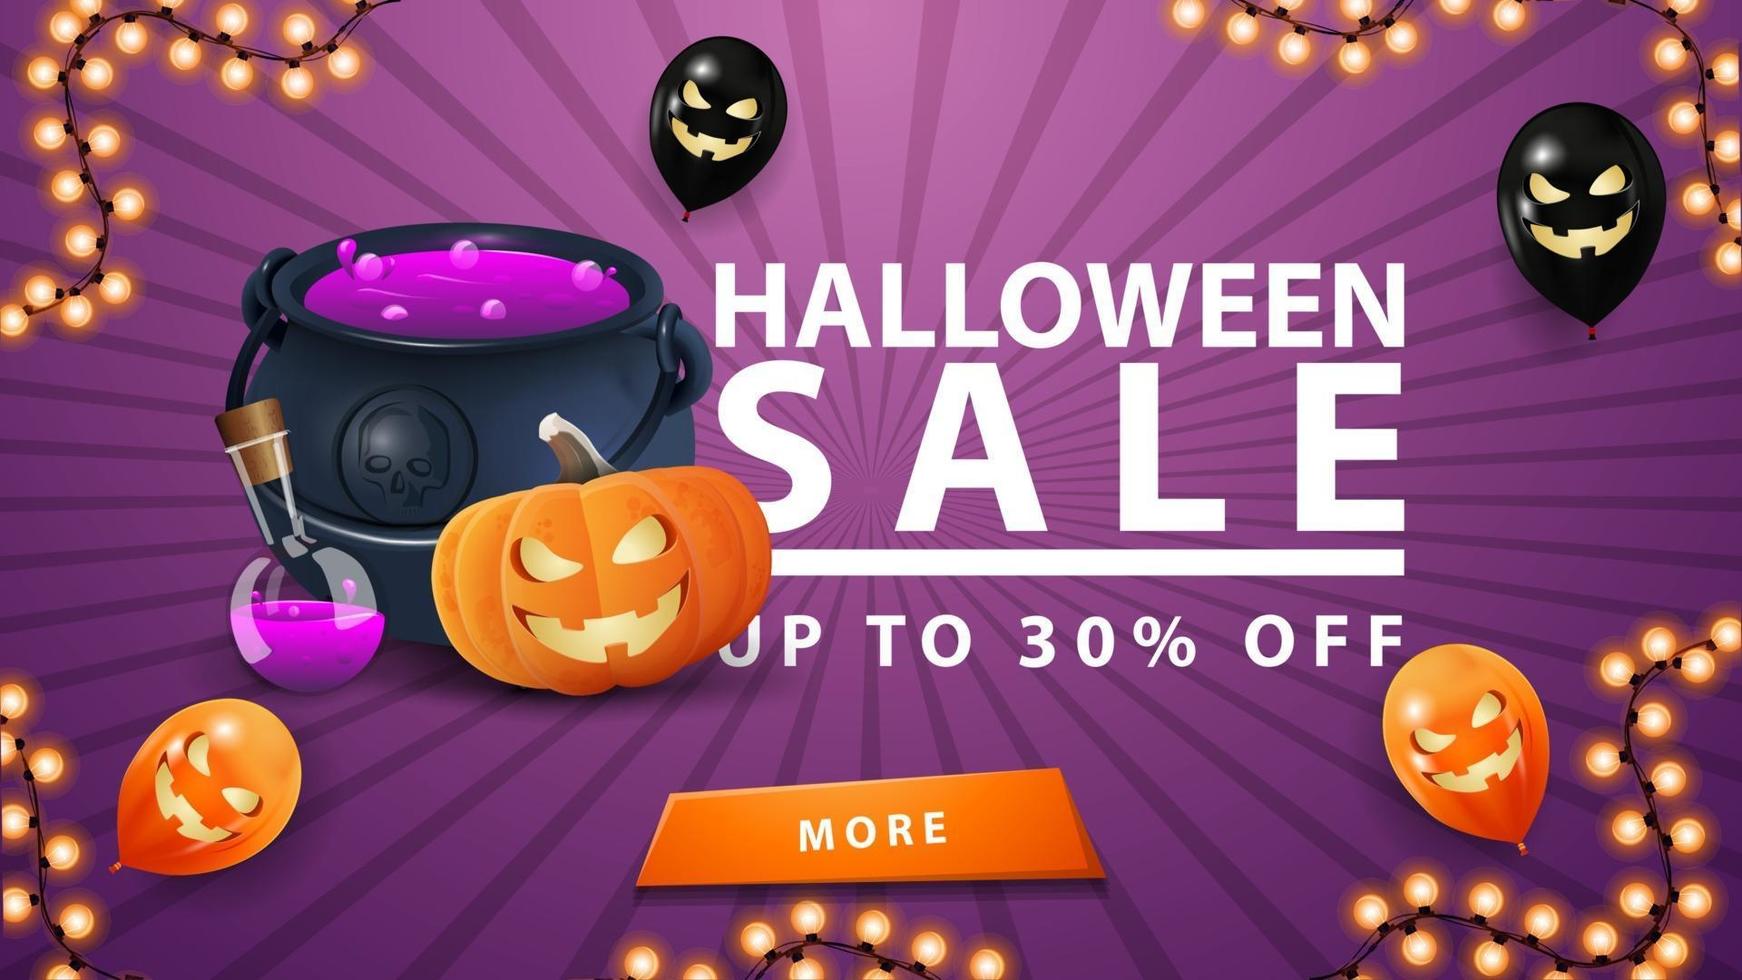 venta de halloween, hasta 30 de descuento, banner morado de descuento con botón, globos de halloween, caldero de brujas y gato de calabaza vector